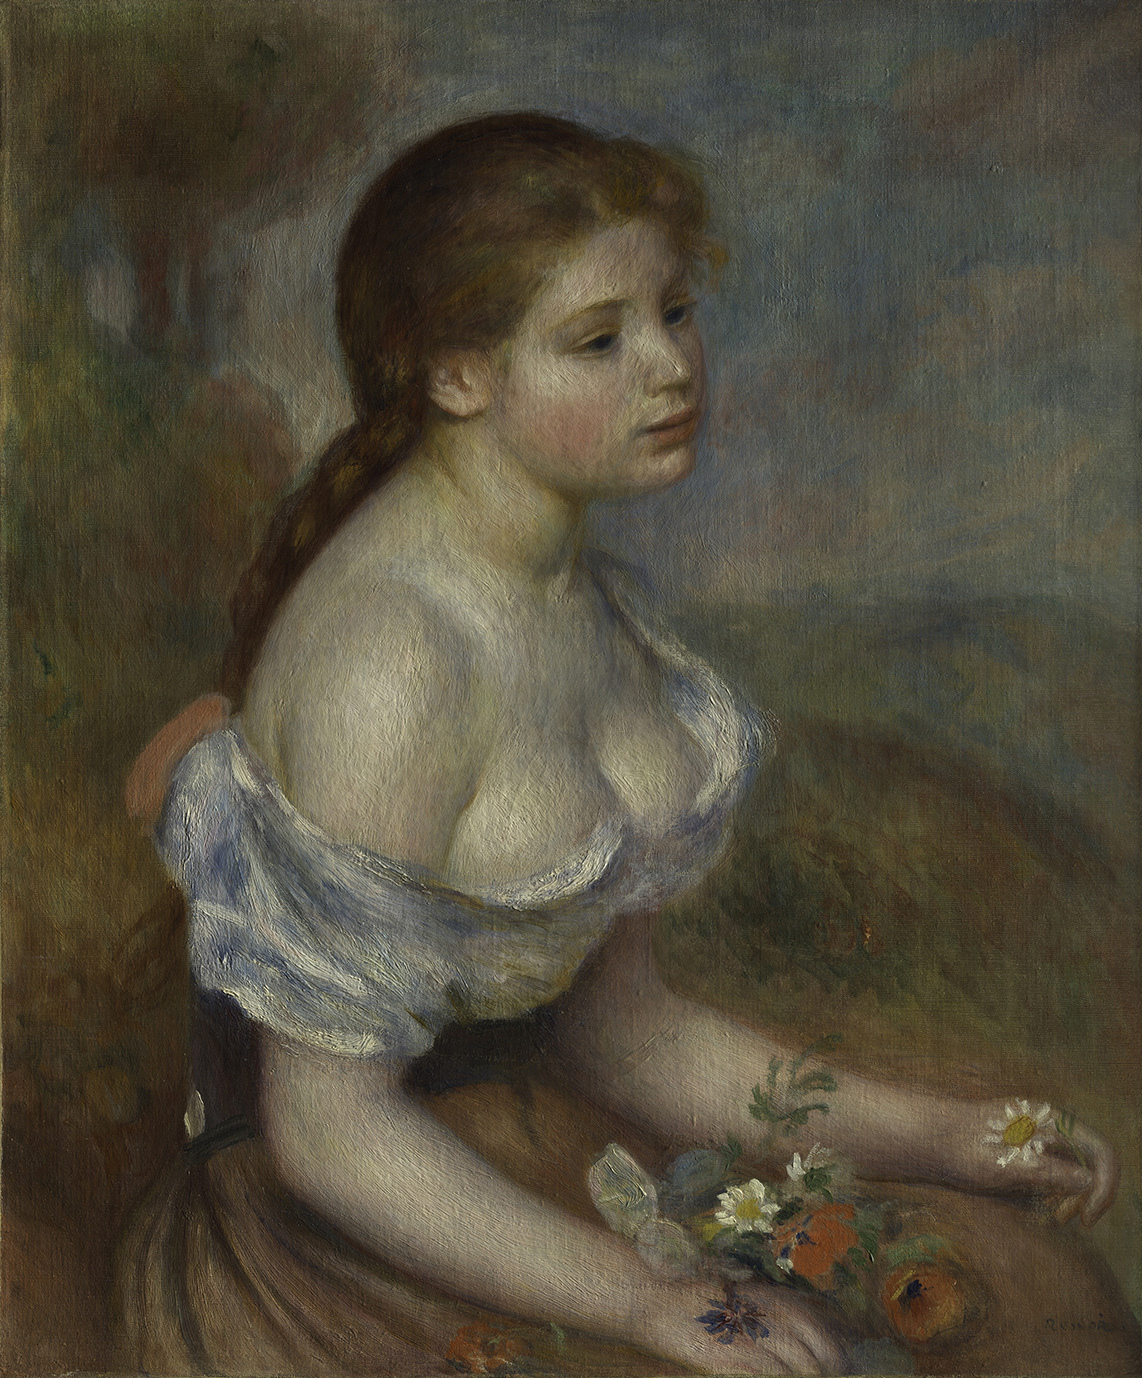 オーギュスト・ルノワール《ヒナギクを持つ少女》1889年 油彩、カンヴァス 65.1x54cm メトロポリタン美術館　